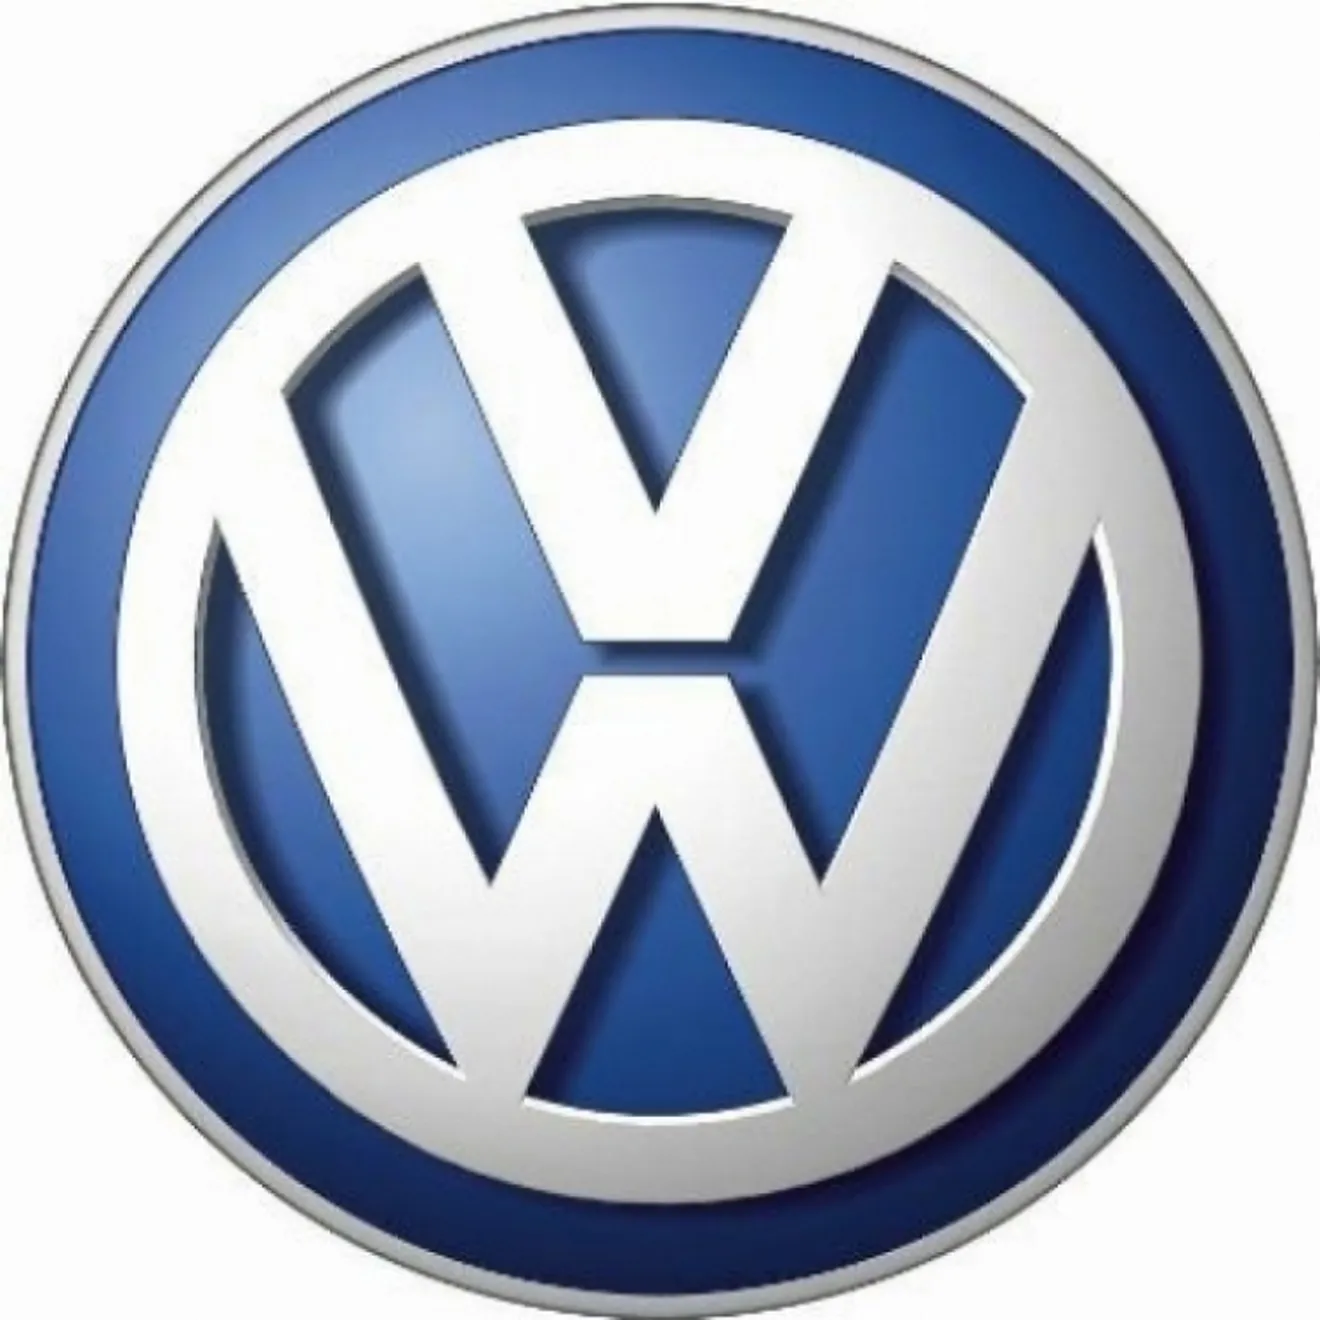 Volkswagen entraría en la F1 si se produjeran cambios